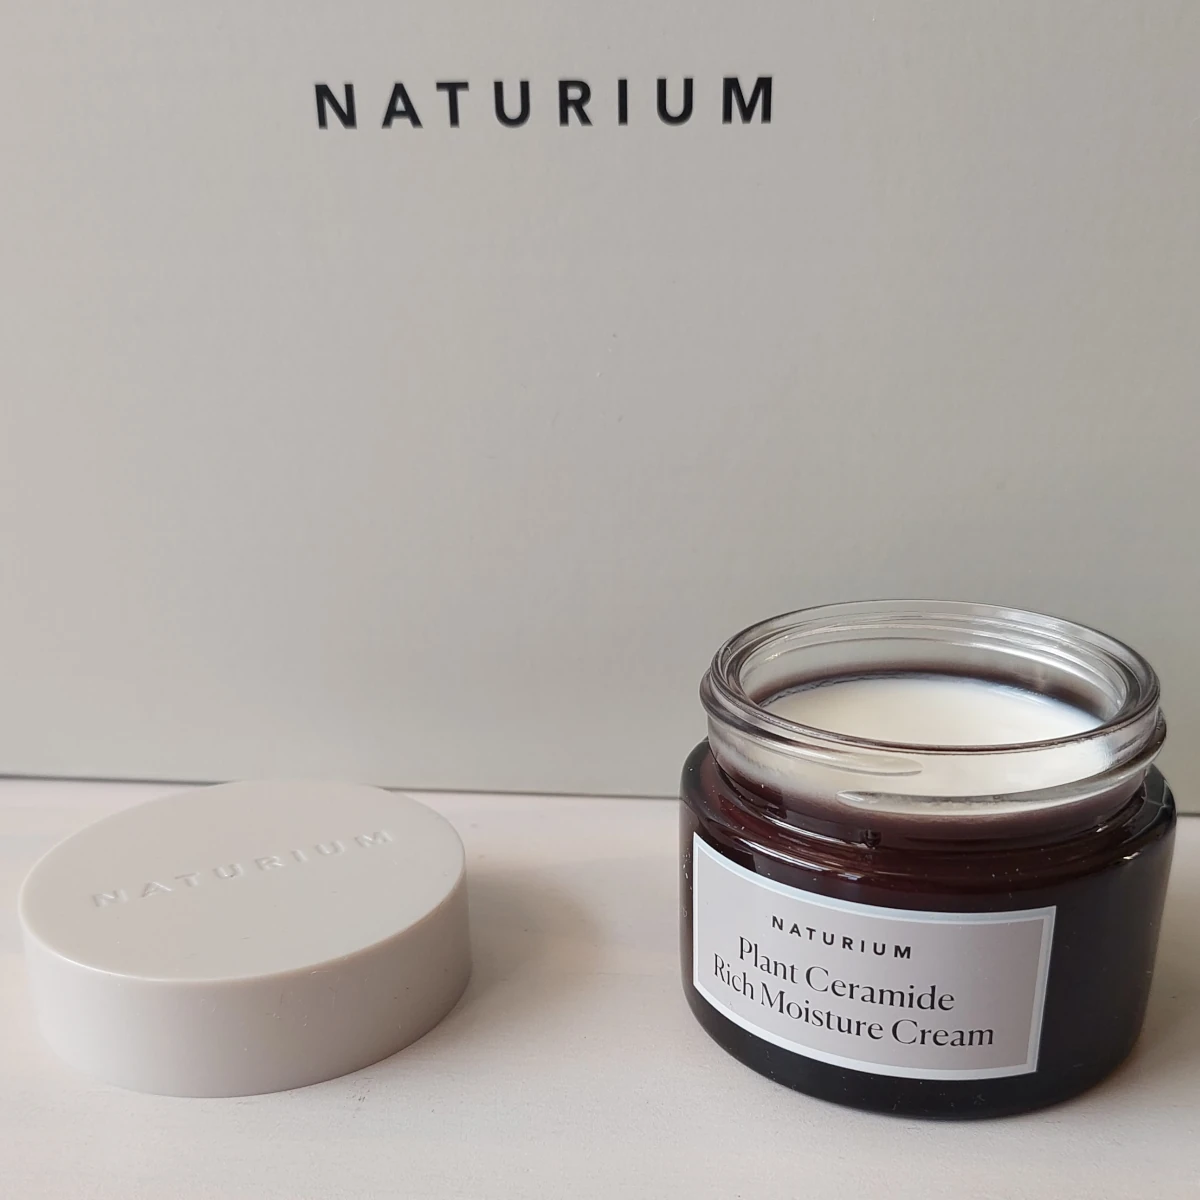 naturium-plant-ceramide-rich-moisture-cream-recensione